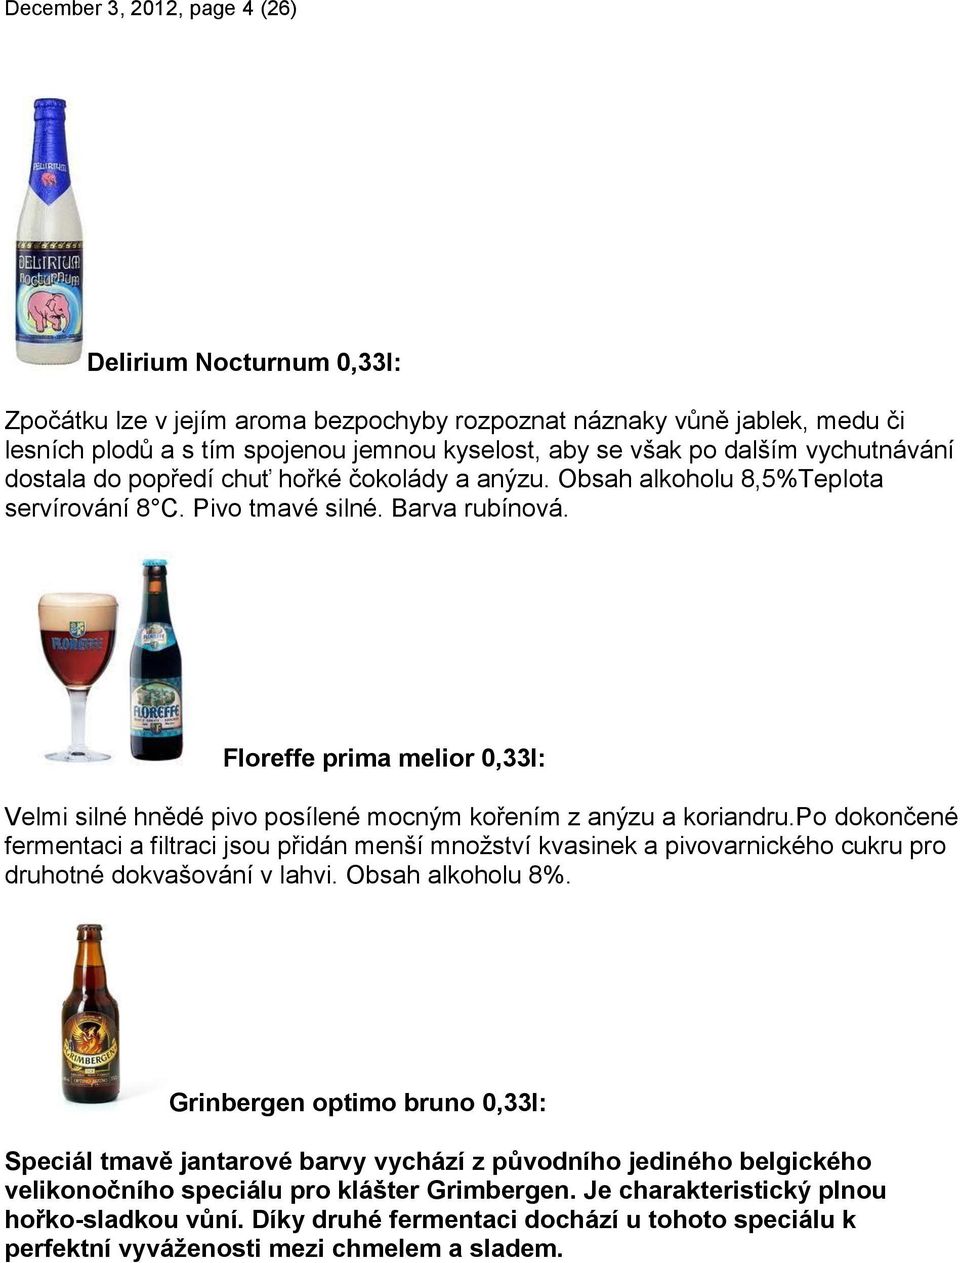 Floreffe prima melior 0,33l: Velmi silné hnědé pivo posílené mocným kořením z anýzu a koriandru.